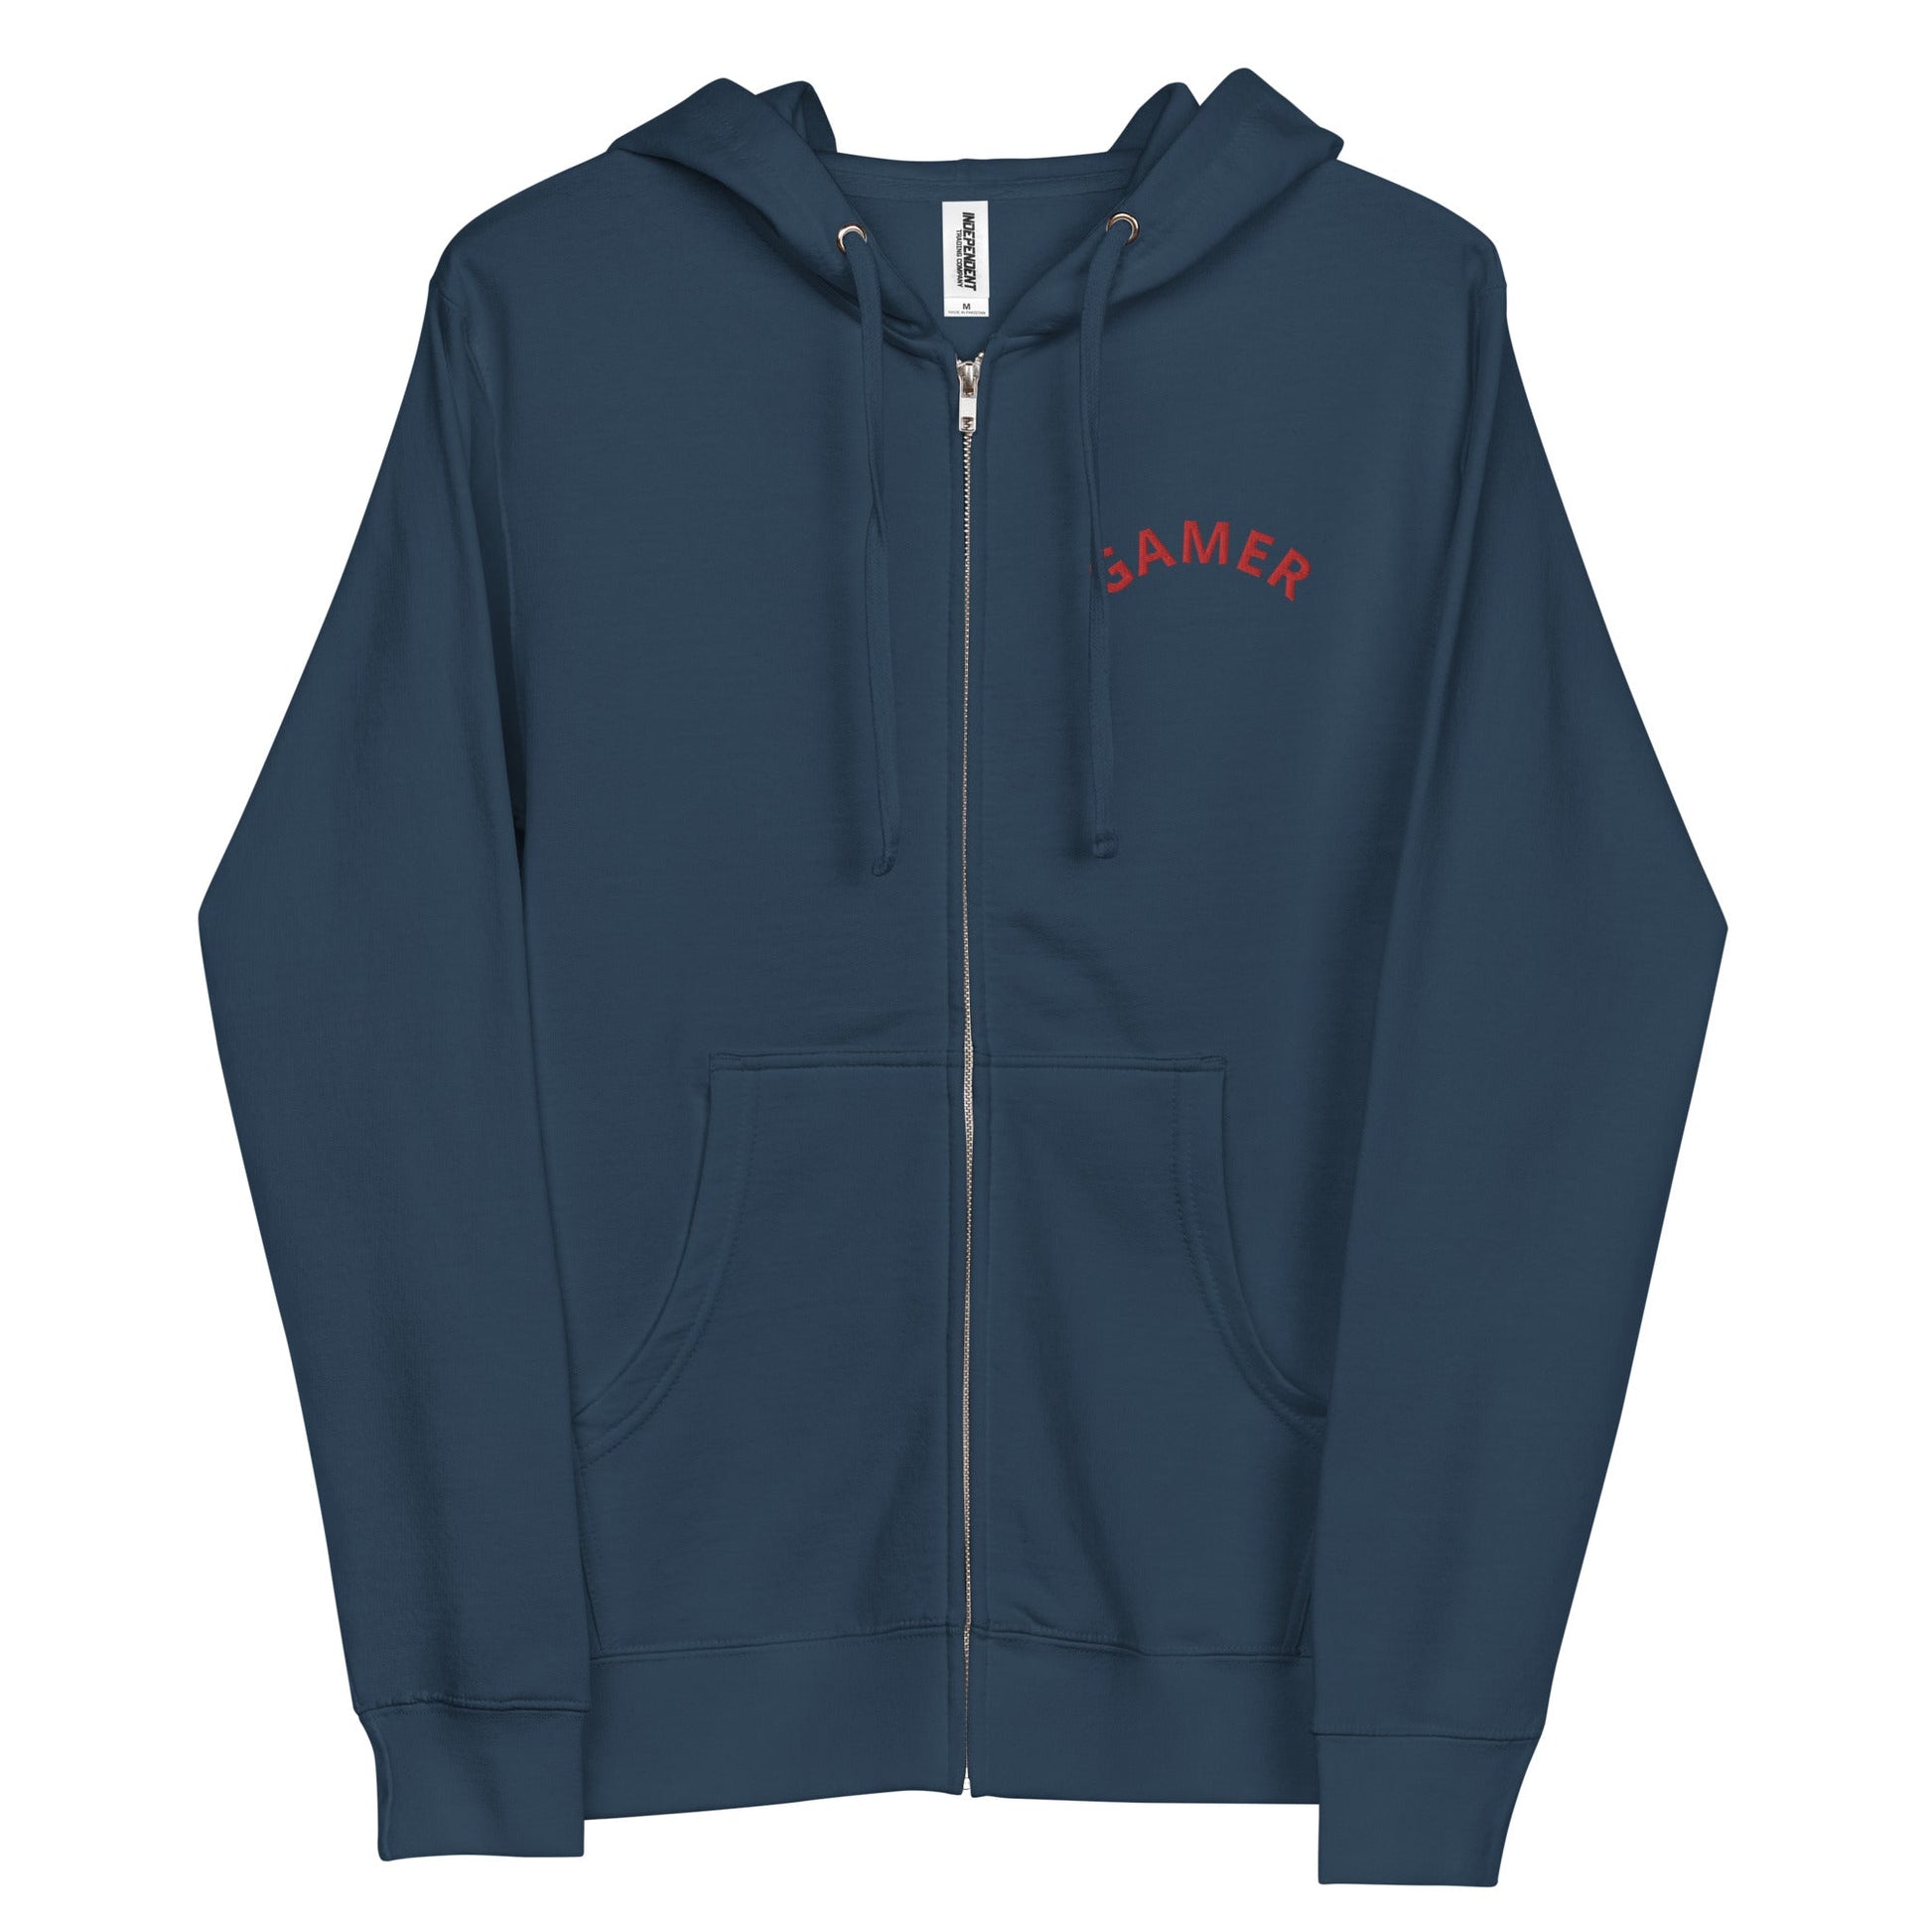 Simple GAMER | Unisex fleece zip up hoodie